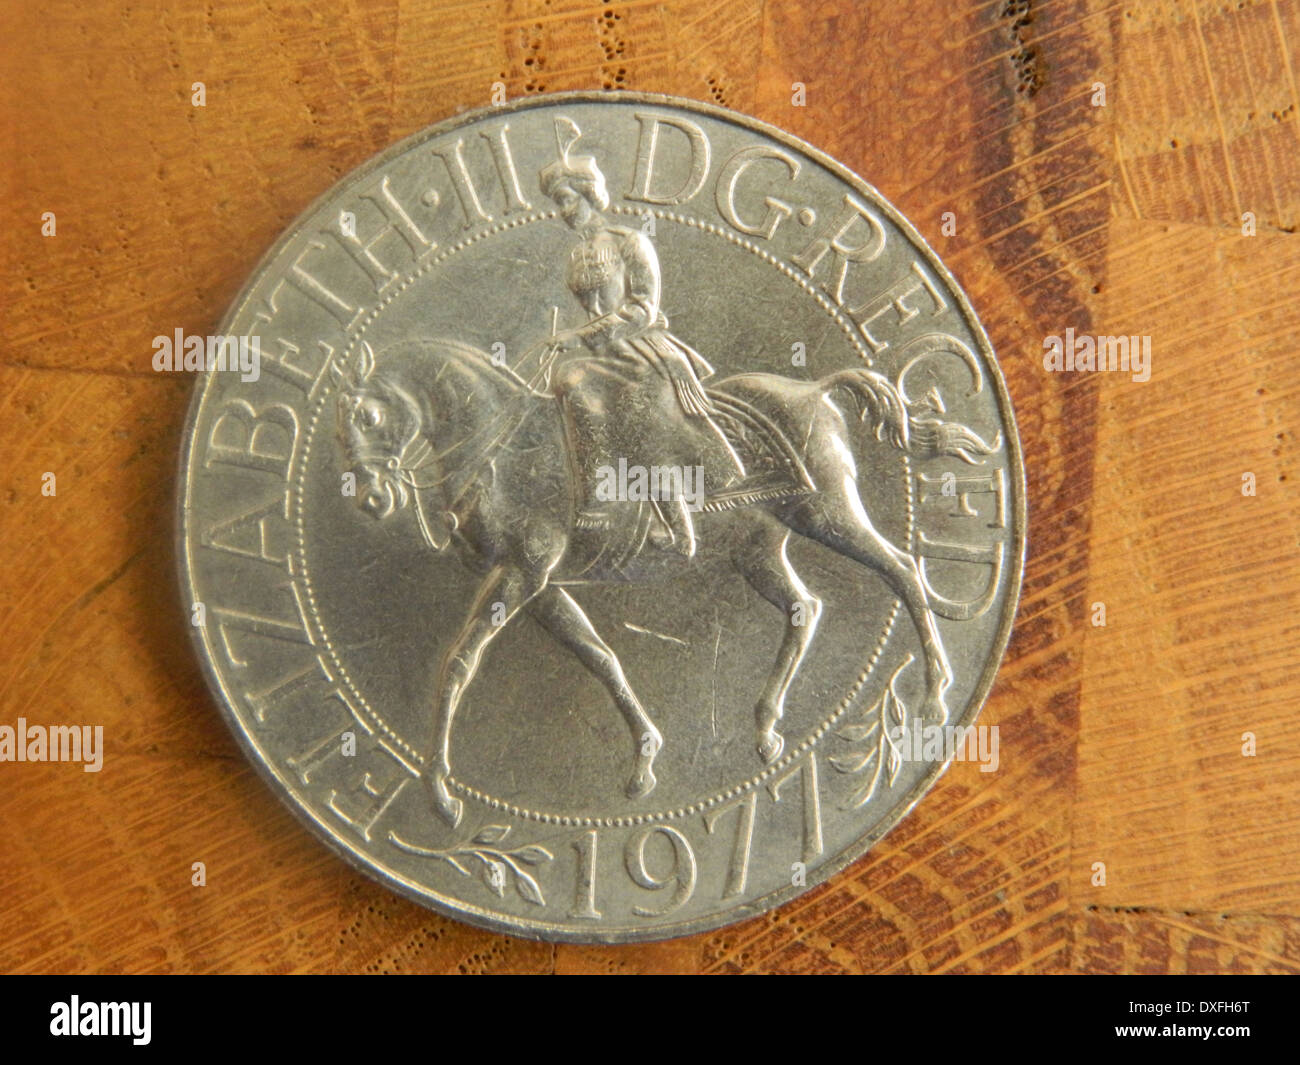 UK Coin Depicting Queen Elizabeth II Silver Jubilee 1977 Stock Photo